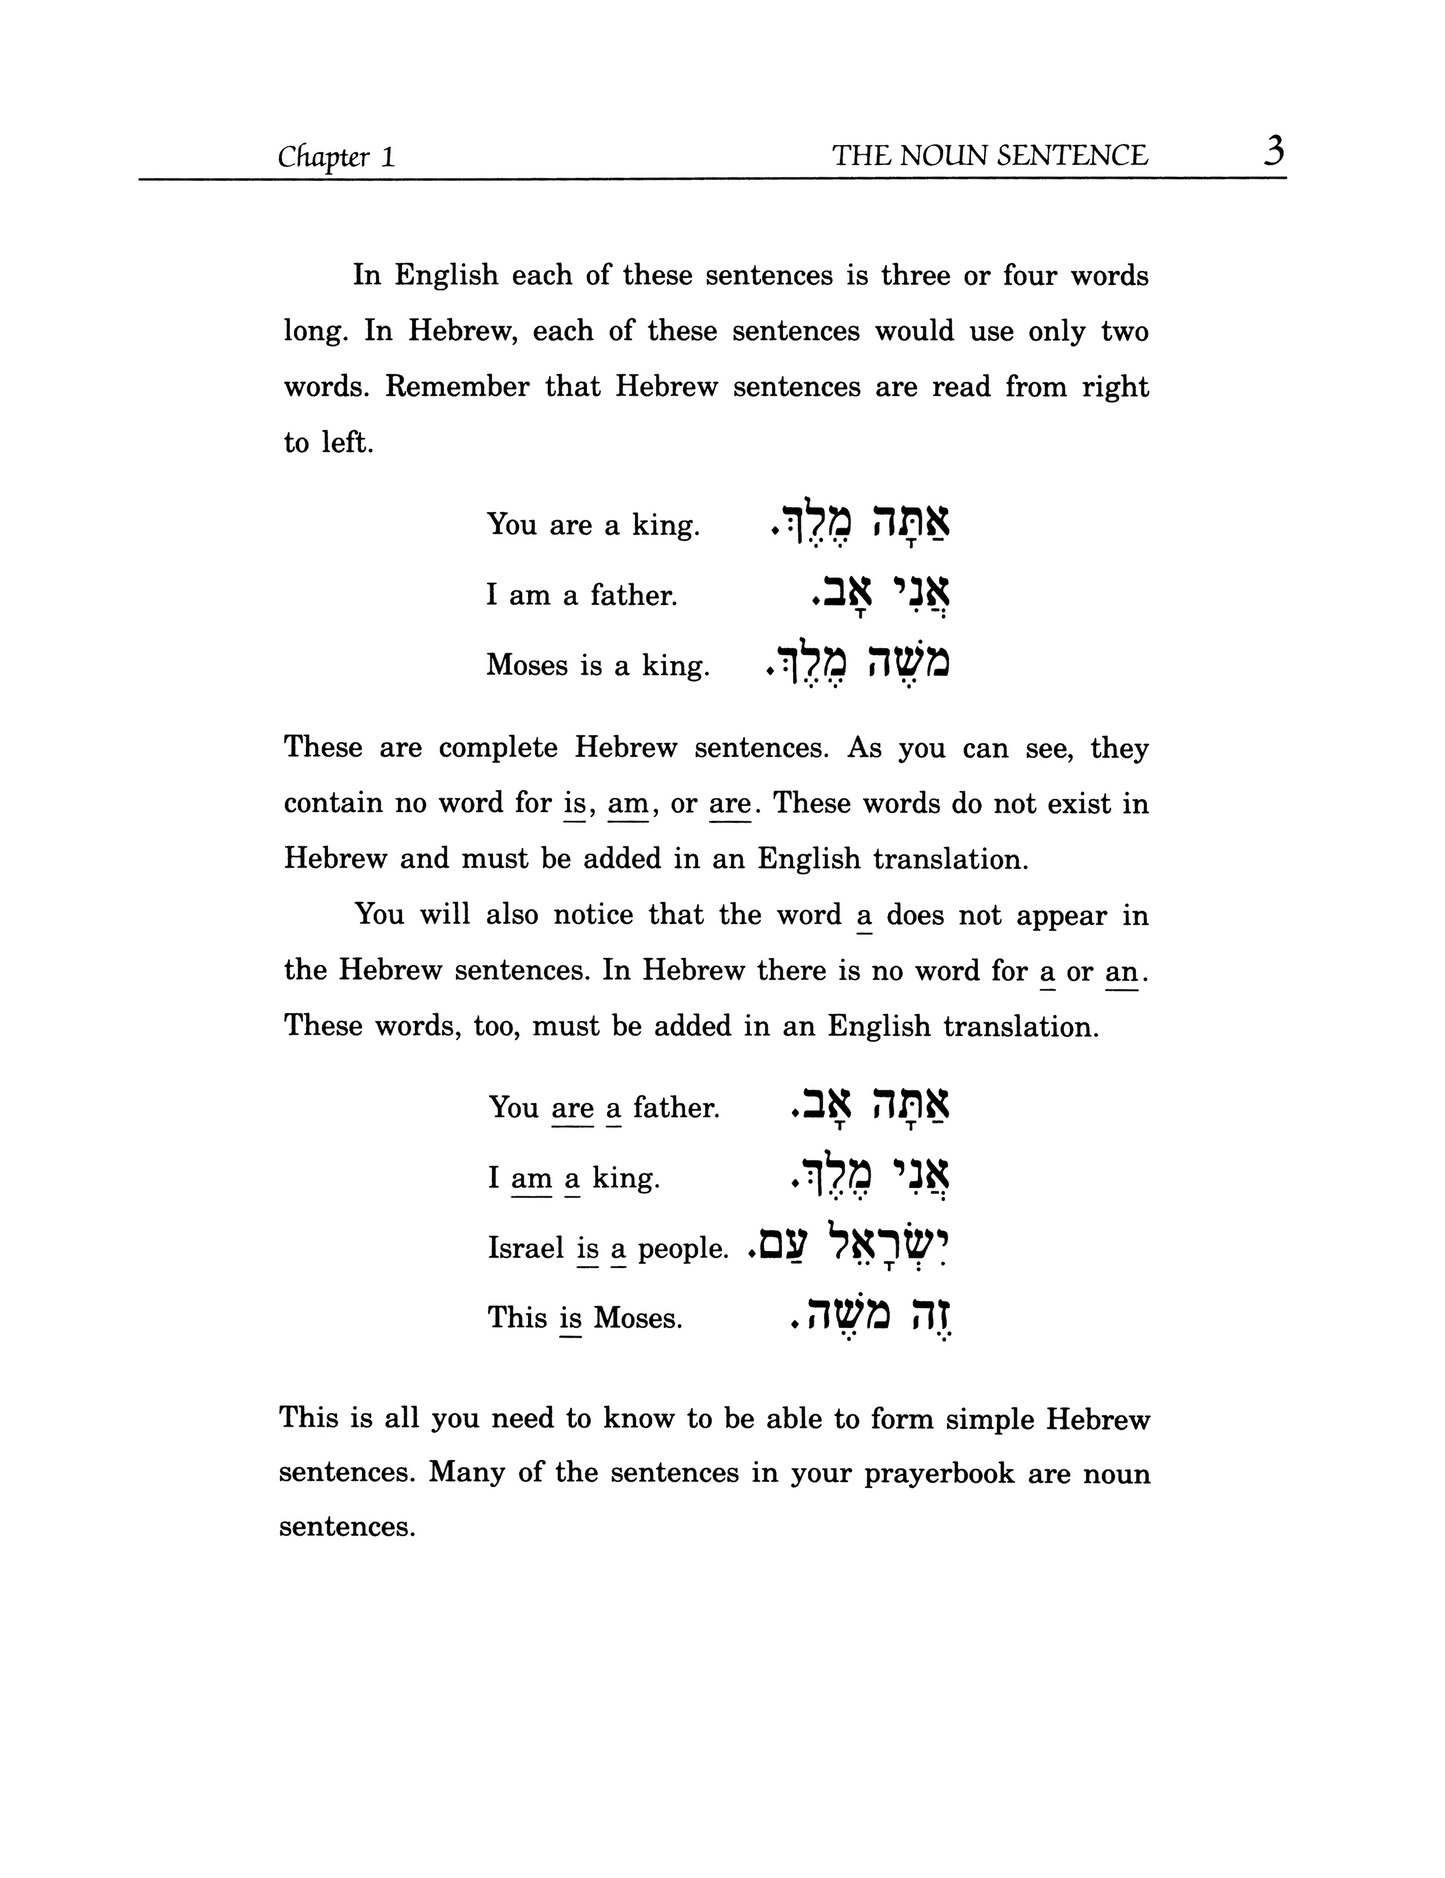 Prayerbook Hebrew the Easy Way